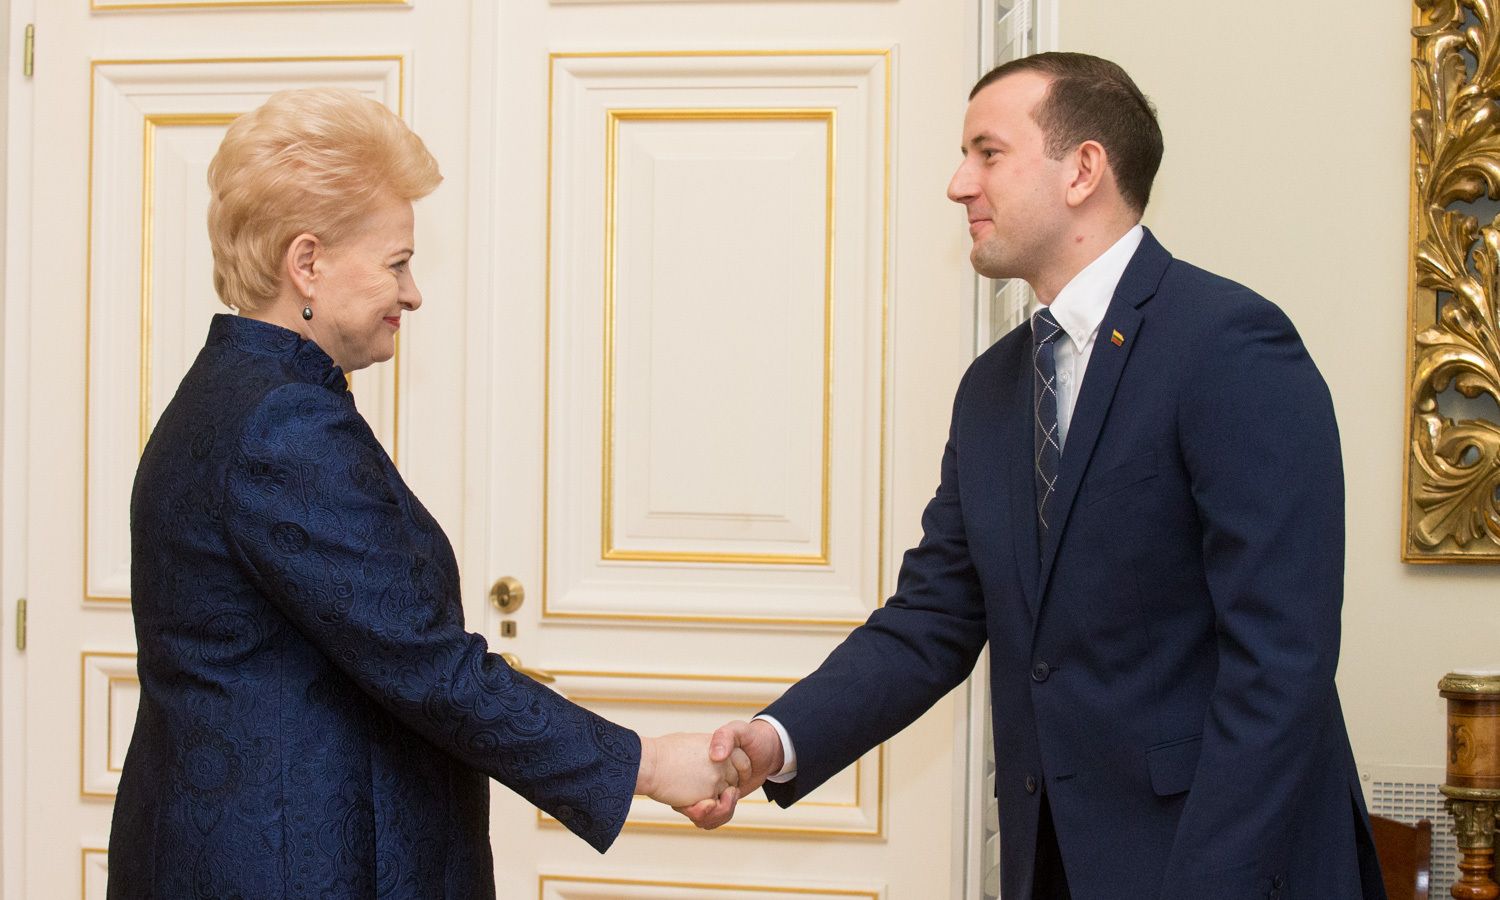 Грибаускайте выбрала министром самого молодого политика страны: в Литве главой экономического ведомства стал Синкявичюс, родившийся в 1990 году